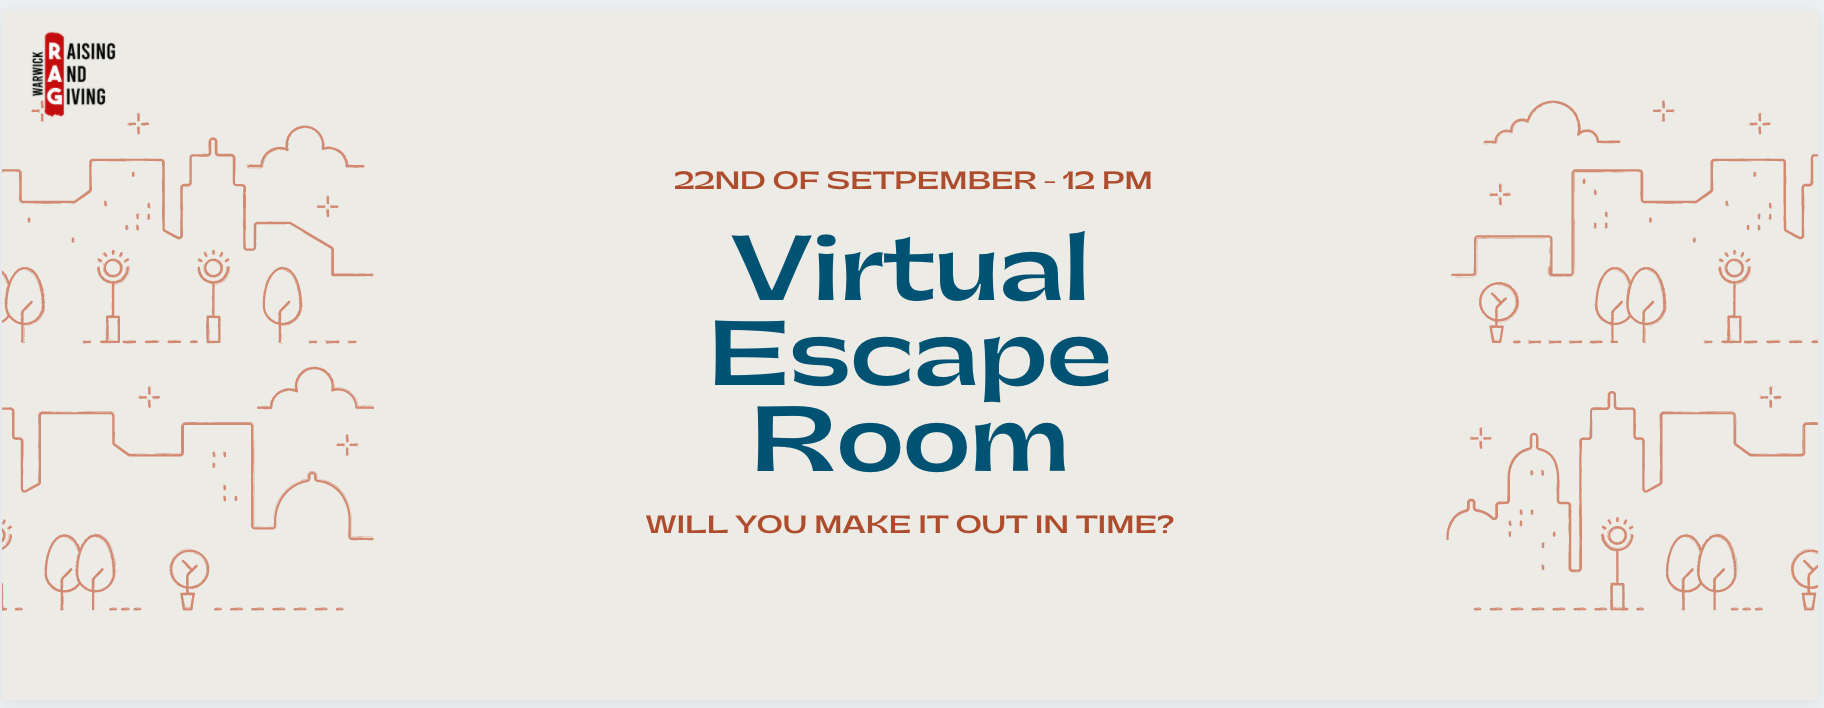 How do you make yourself a virtual escape room?